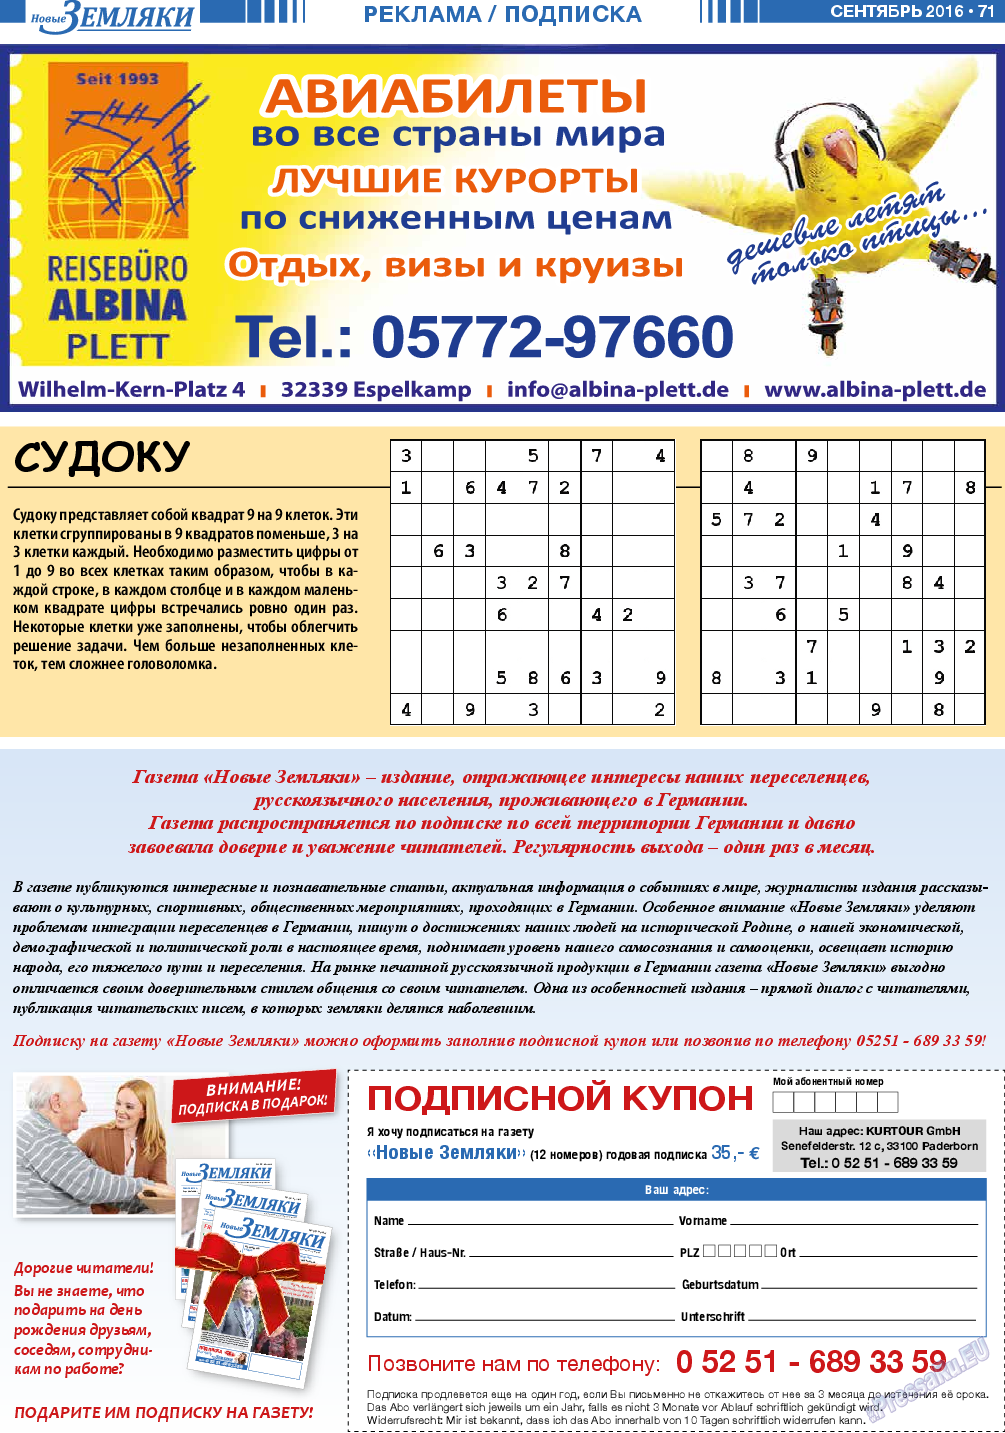 Новые Земляки, газета. 2016 №9 стр.71